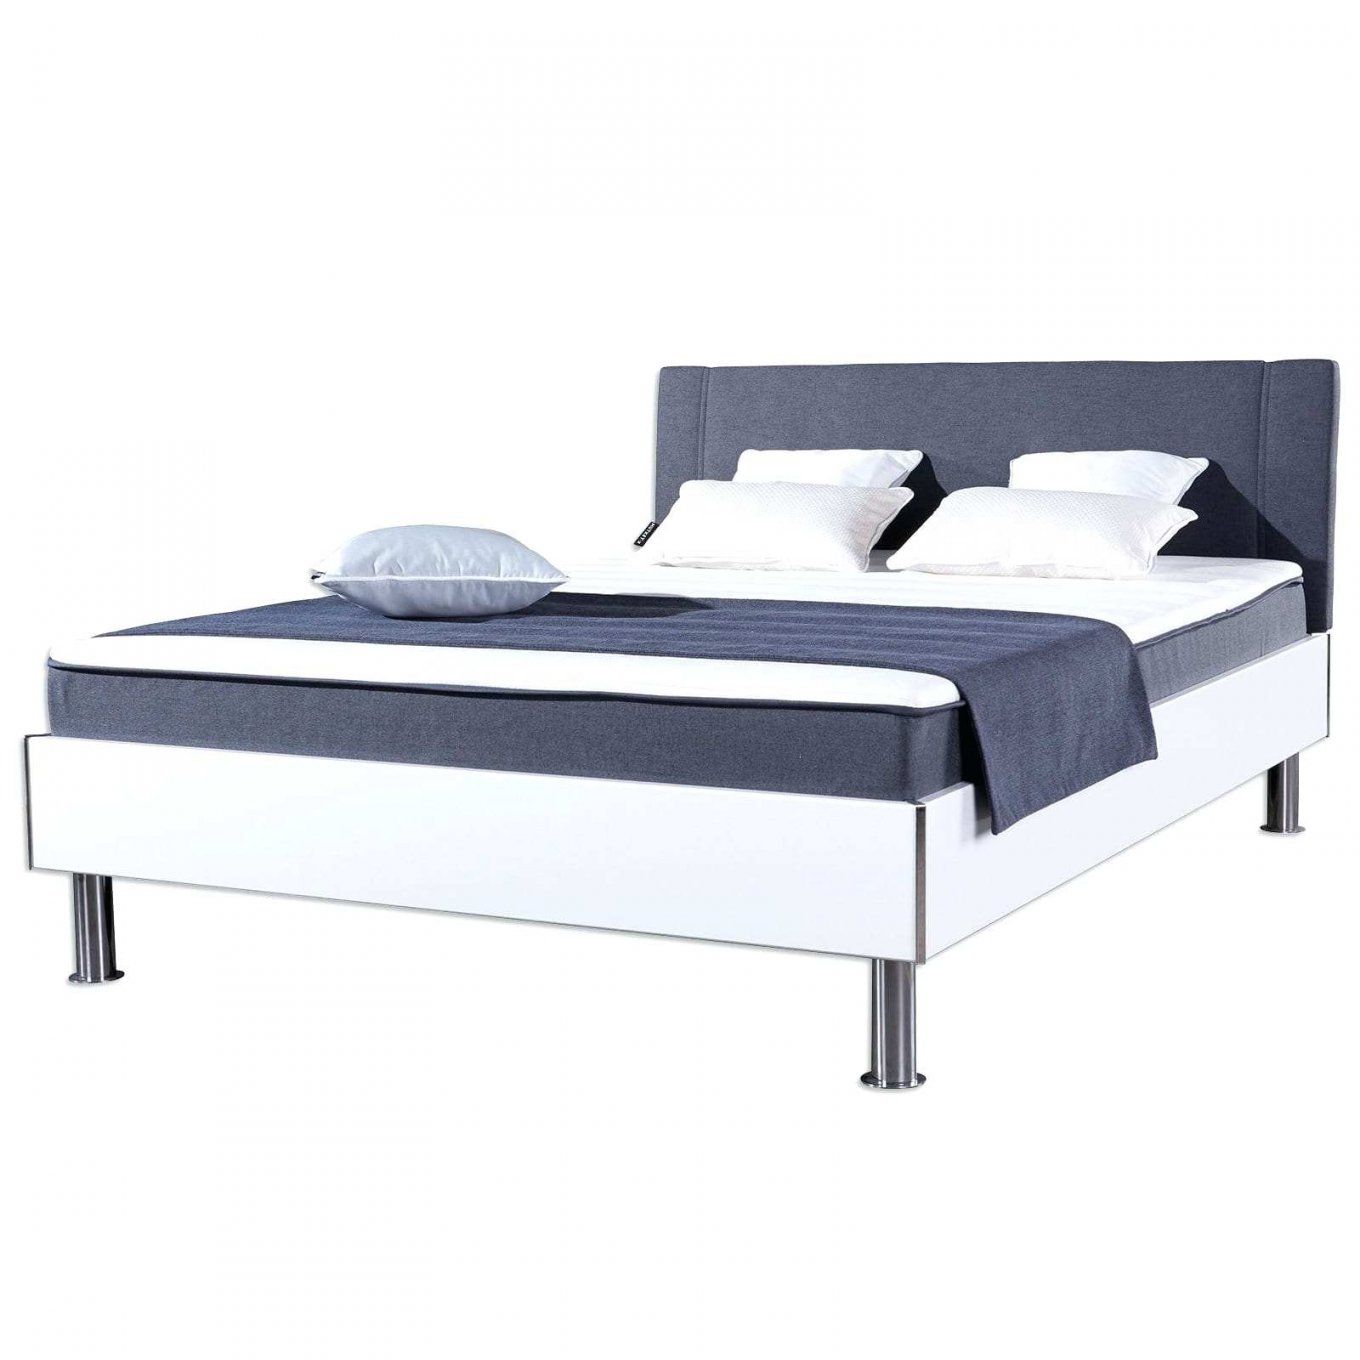 Betten 120×200 Bett Anton Weia Anthrazit H2 120×200 Cm Bett 120 X von Bett 120X200 Weiß Ikea Bild